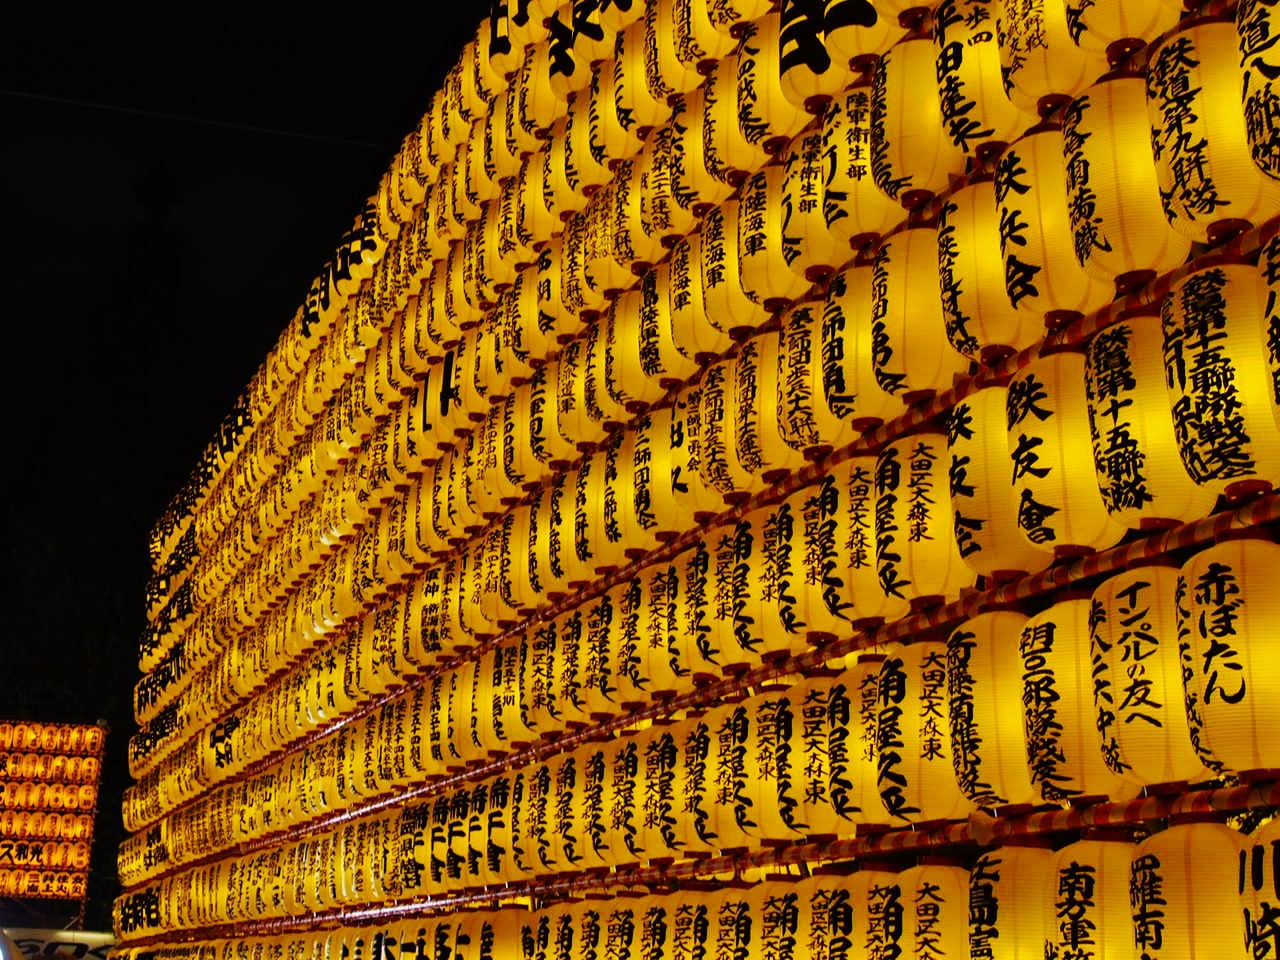 平和な世の実現を願って 靖国神社 みたままつり 東京の旅行記 ブログ By 銭形幸一さん フォートラベル